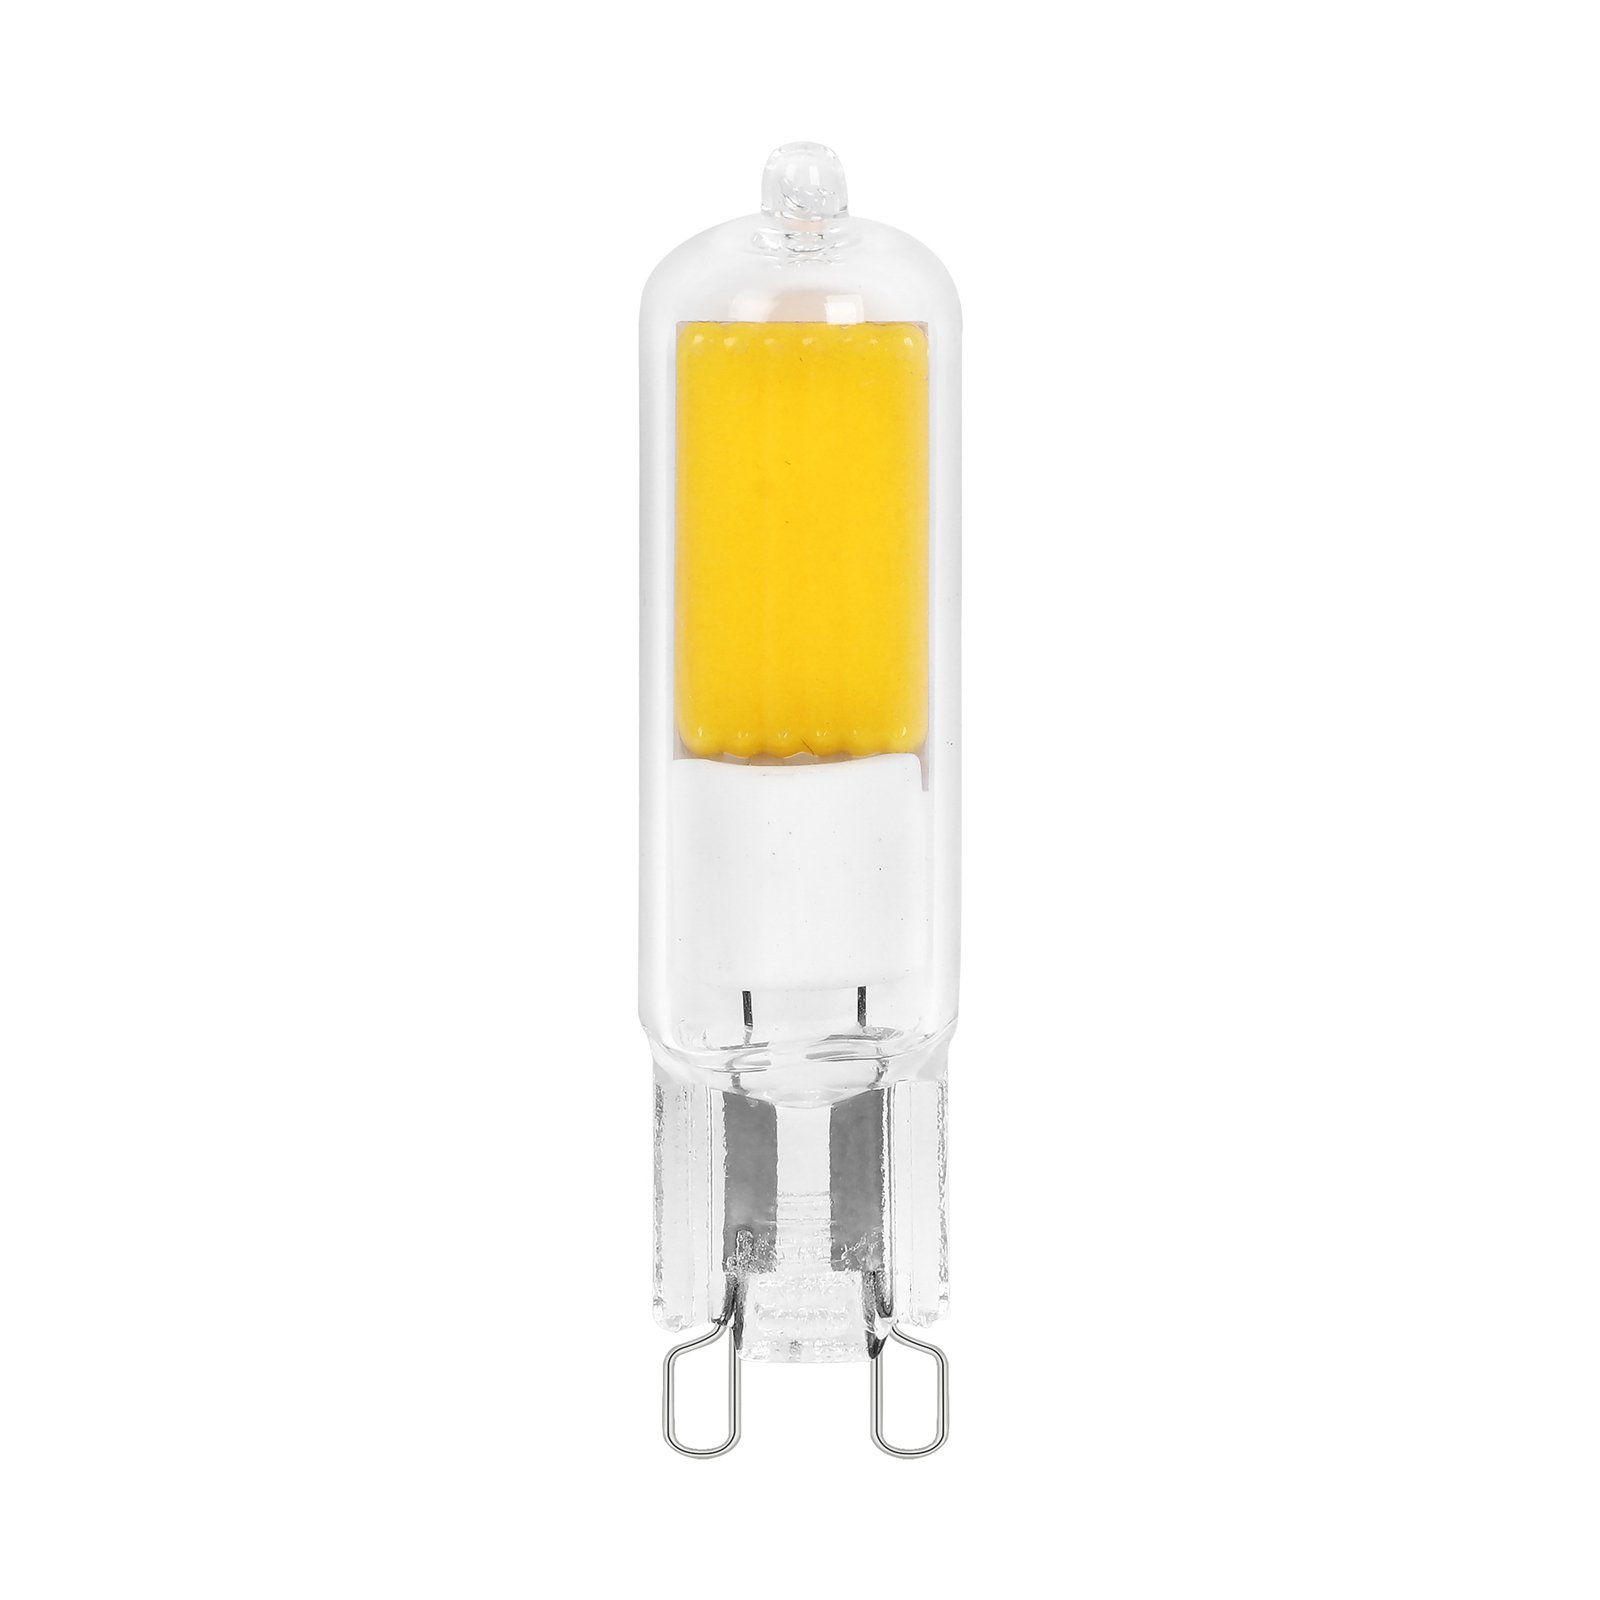 Arcchio bi-pin LED bulb, G9, 4W, 2700K, set of 3